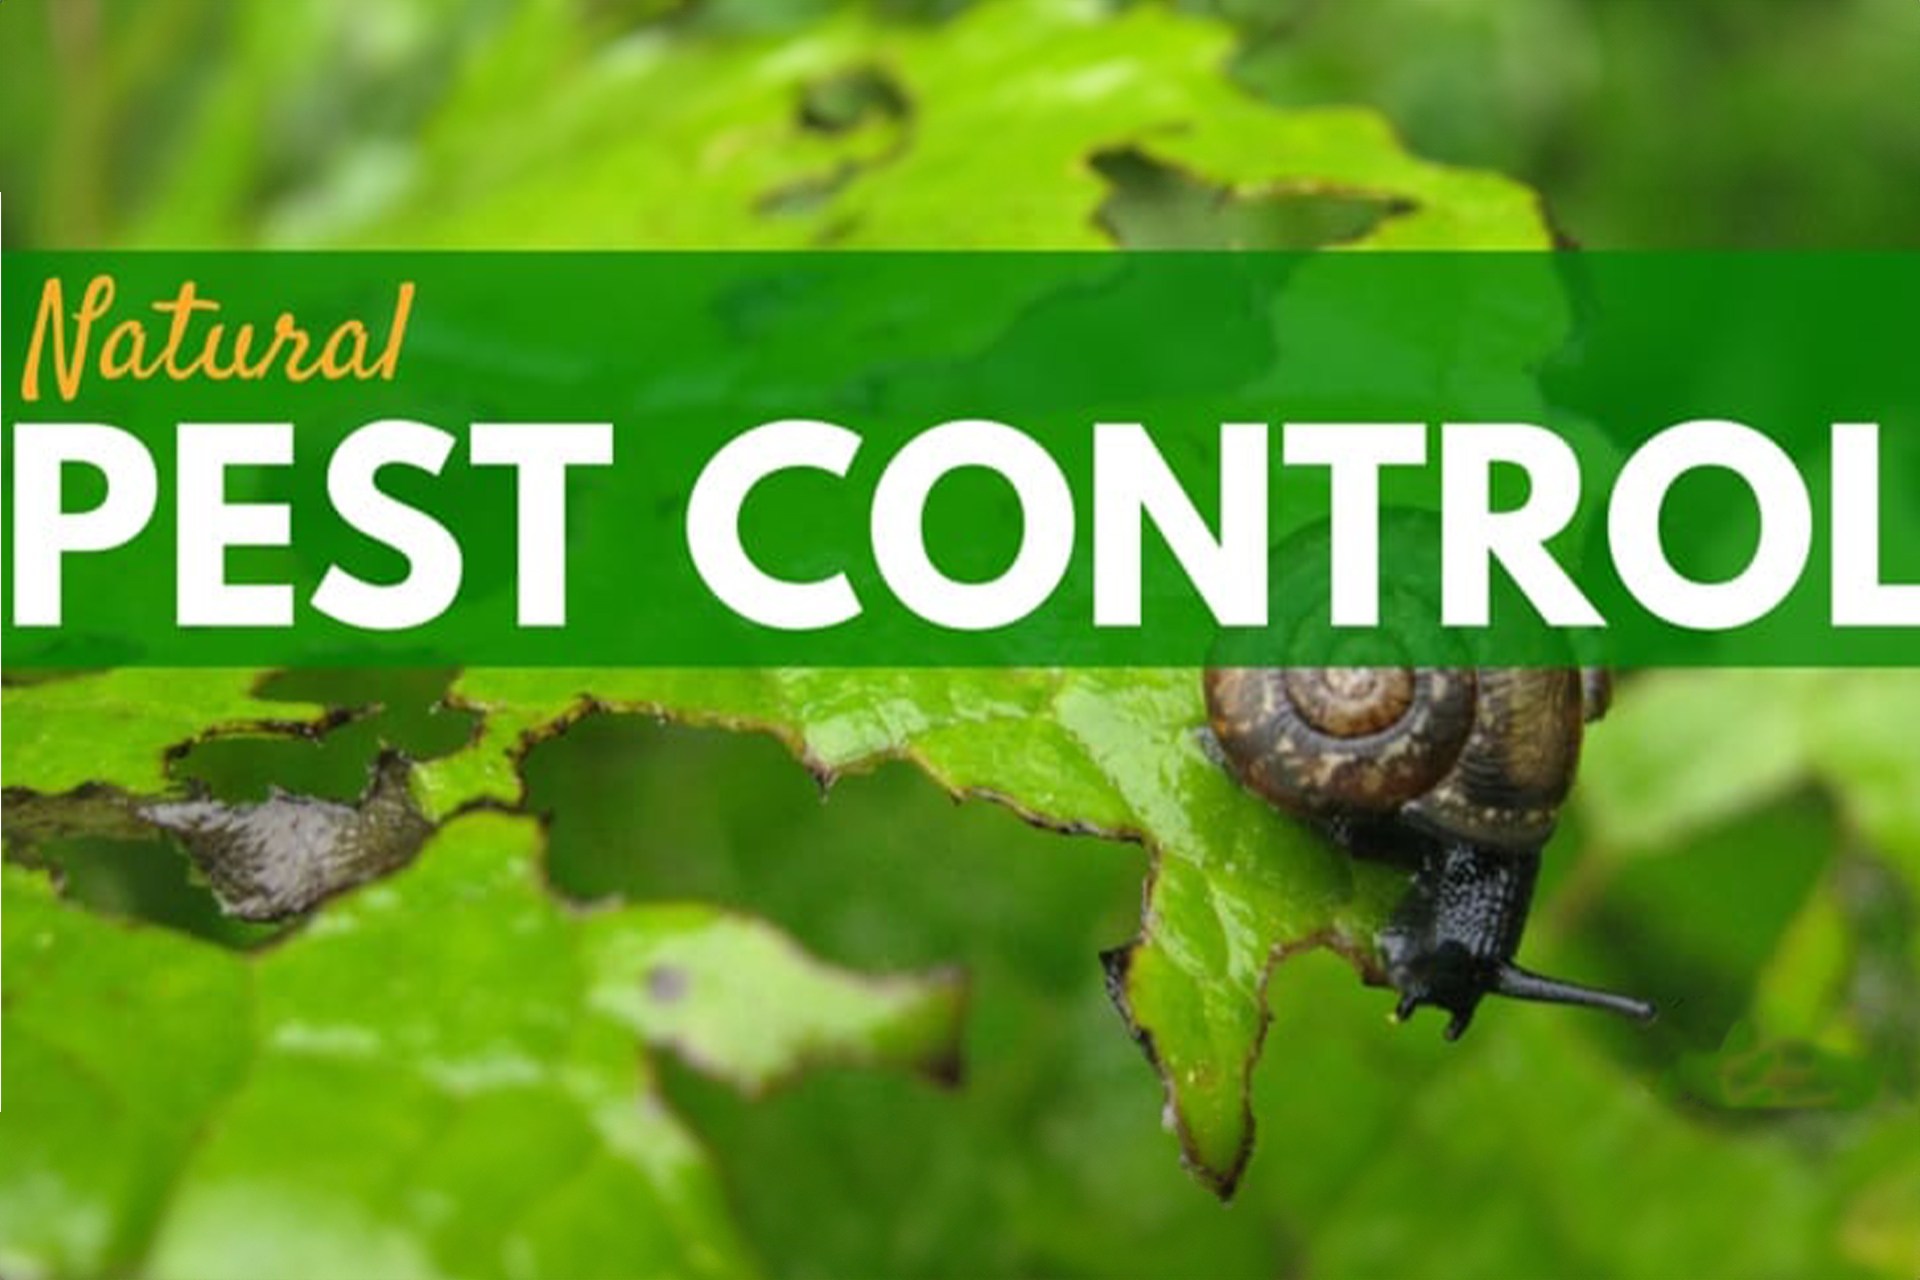 Natural Pest Control Birmingham Alabama